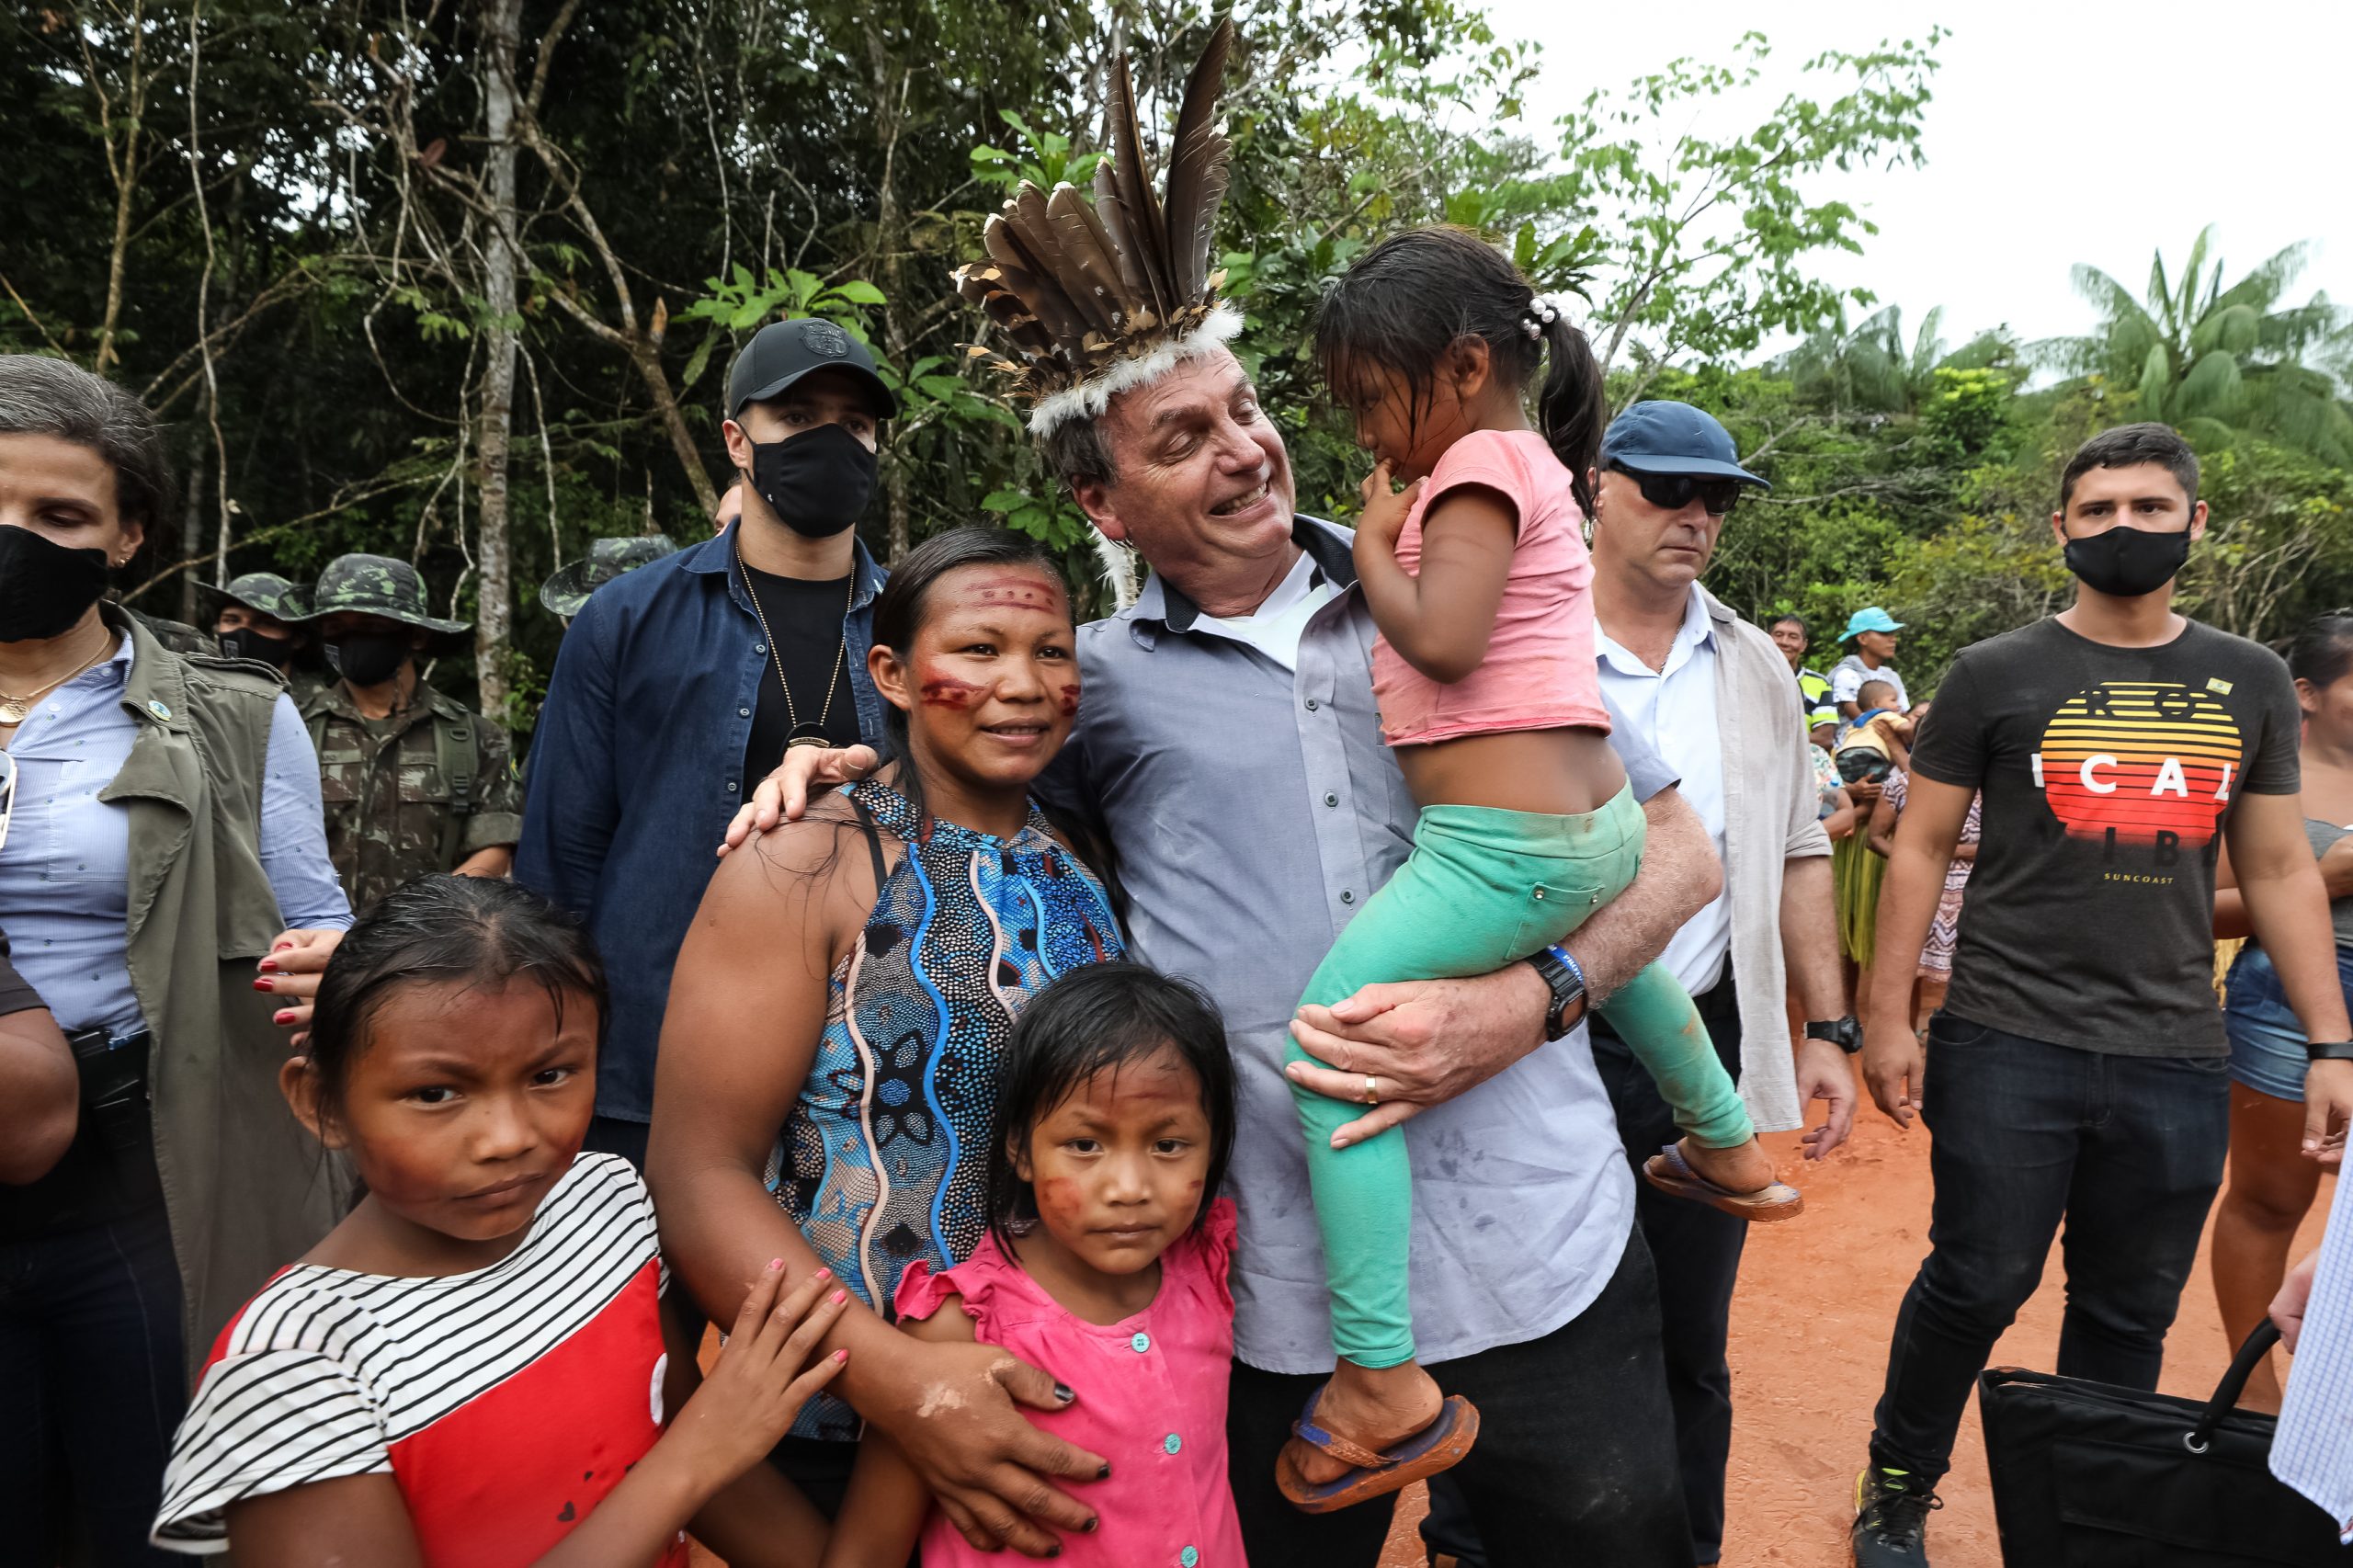 Sob clima de festa, indígenas recebem Bolsonaro com euforia e muitas fotos 12